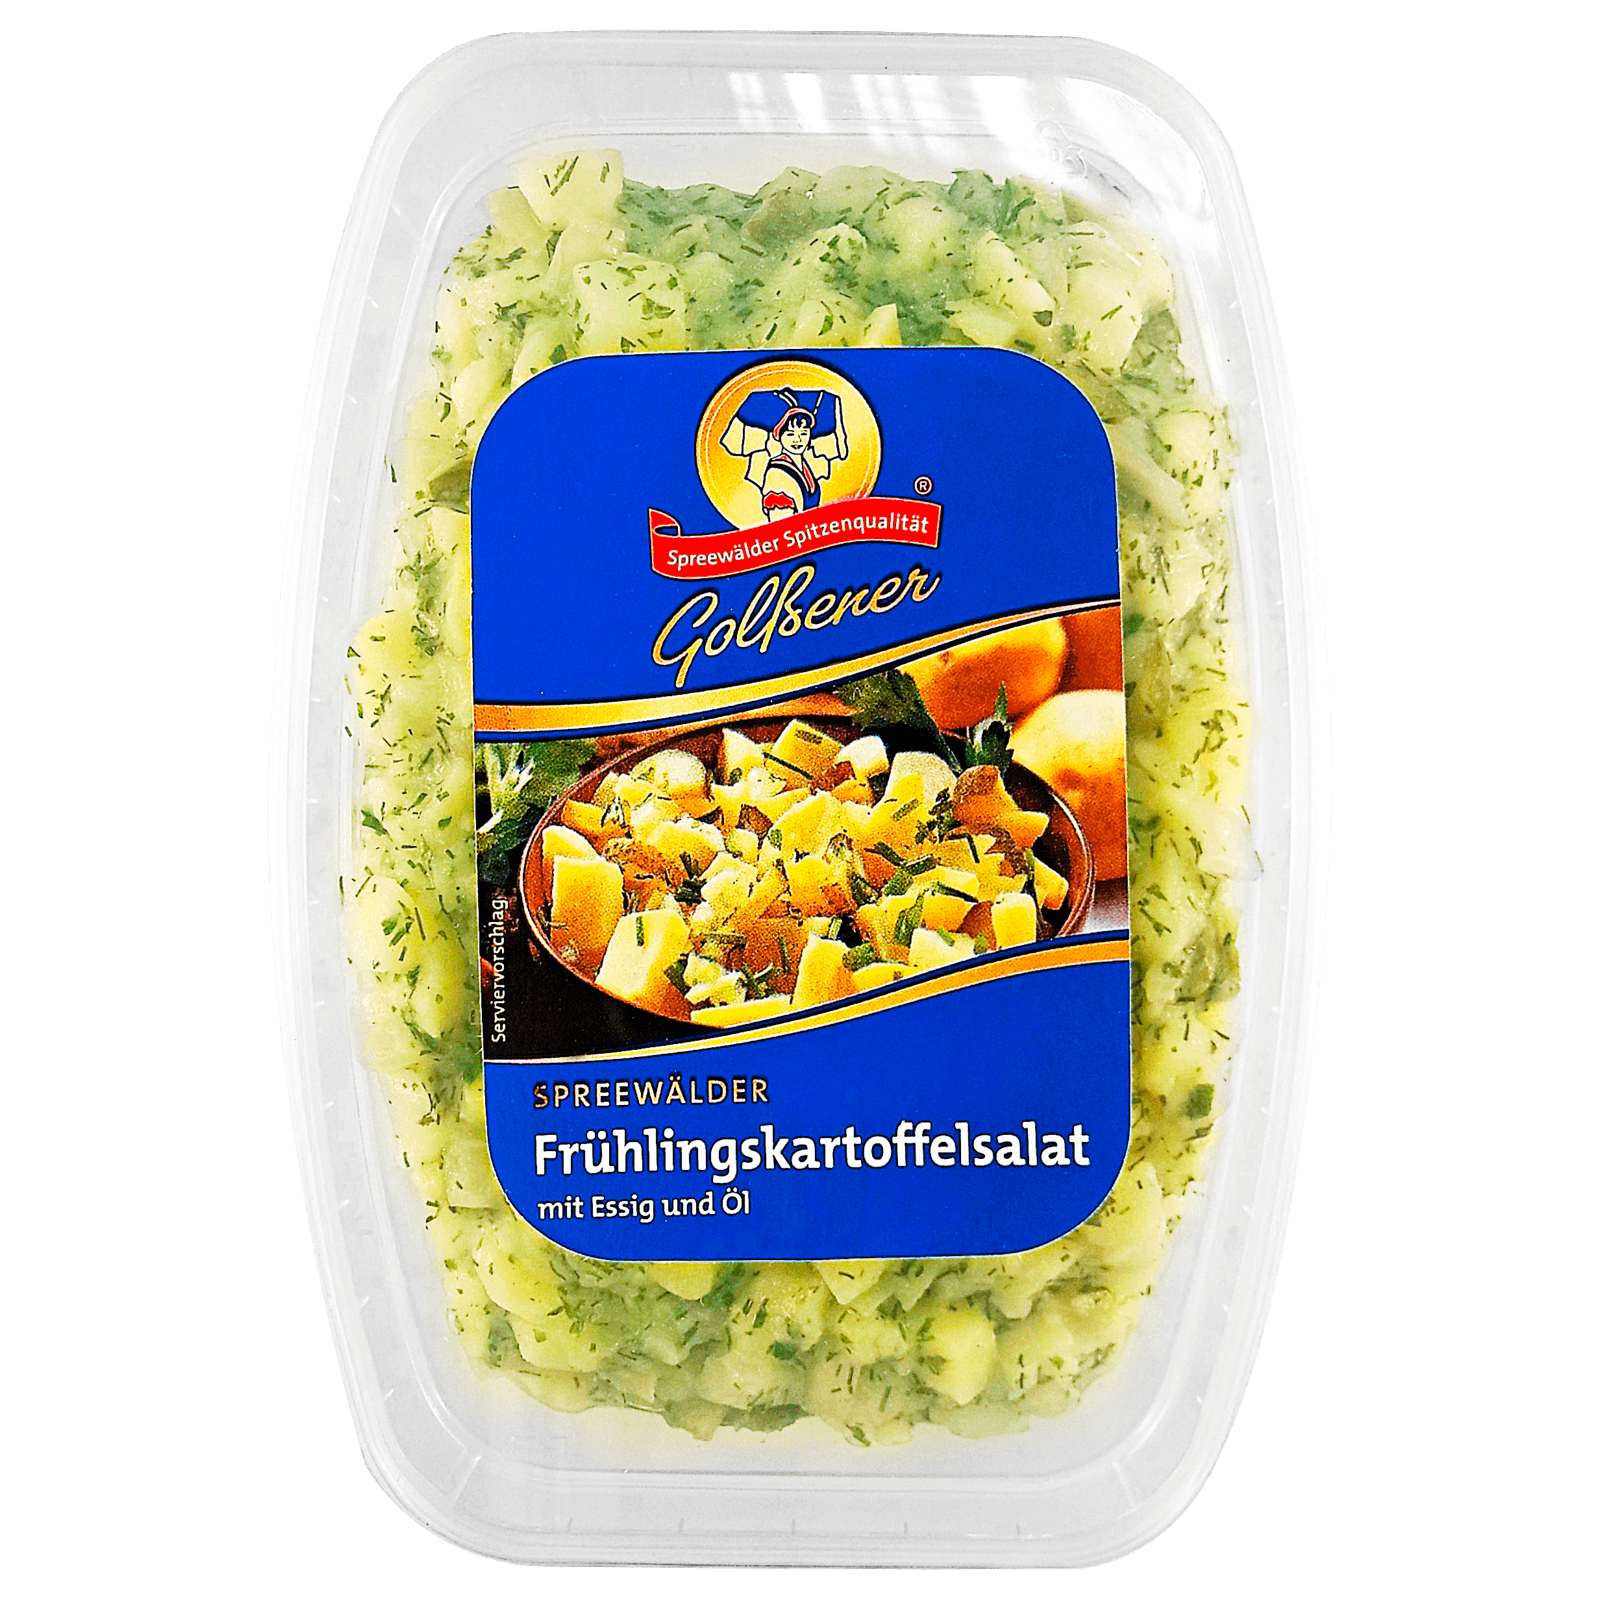 Golßener Frühlings-Kartoffelsalat 700g bei REWE online bestellen!